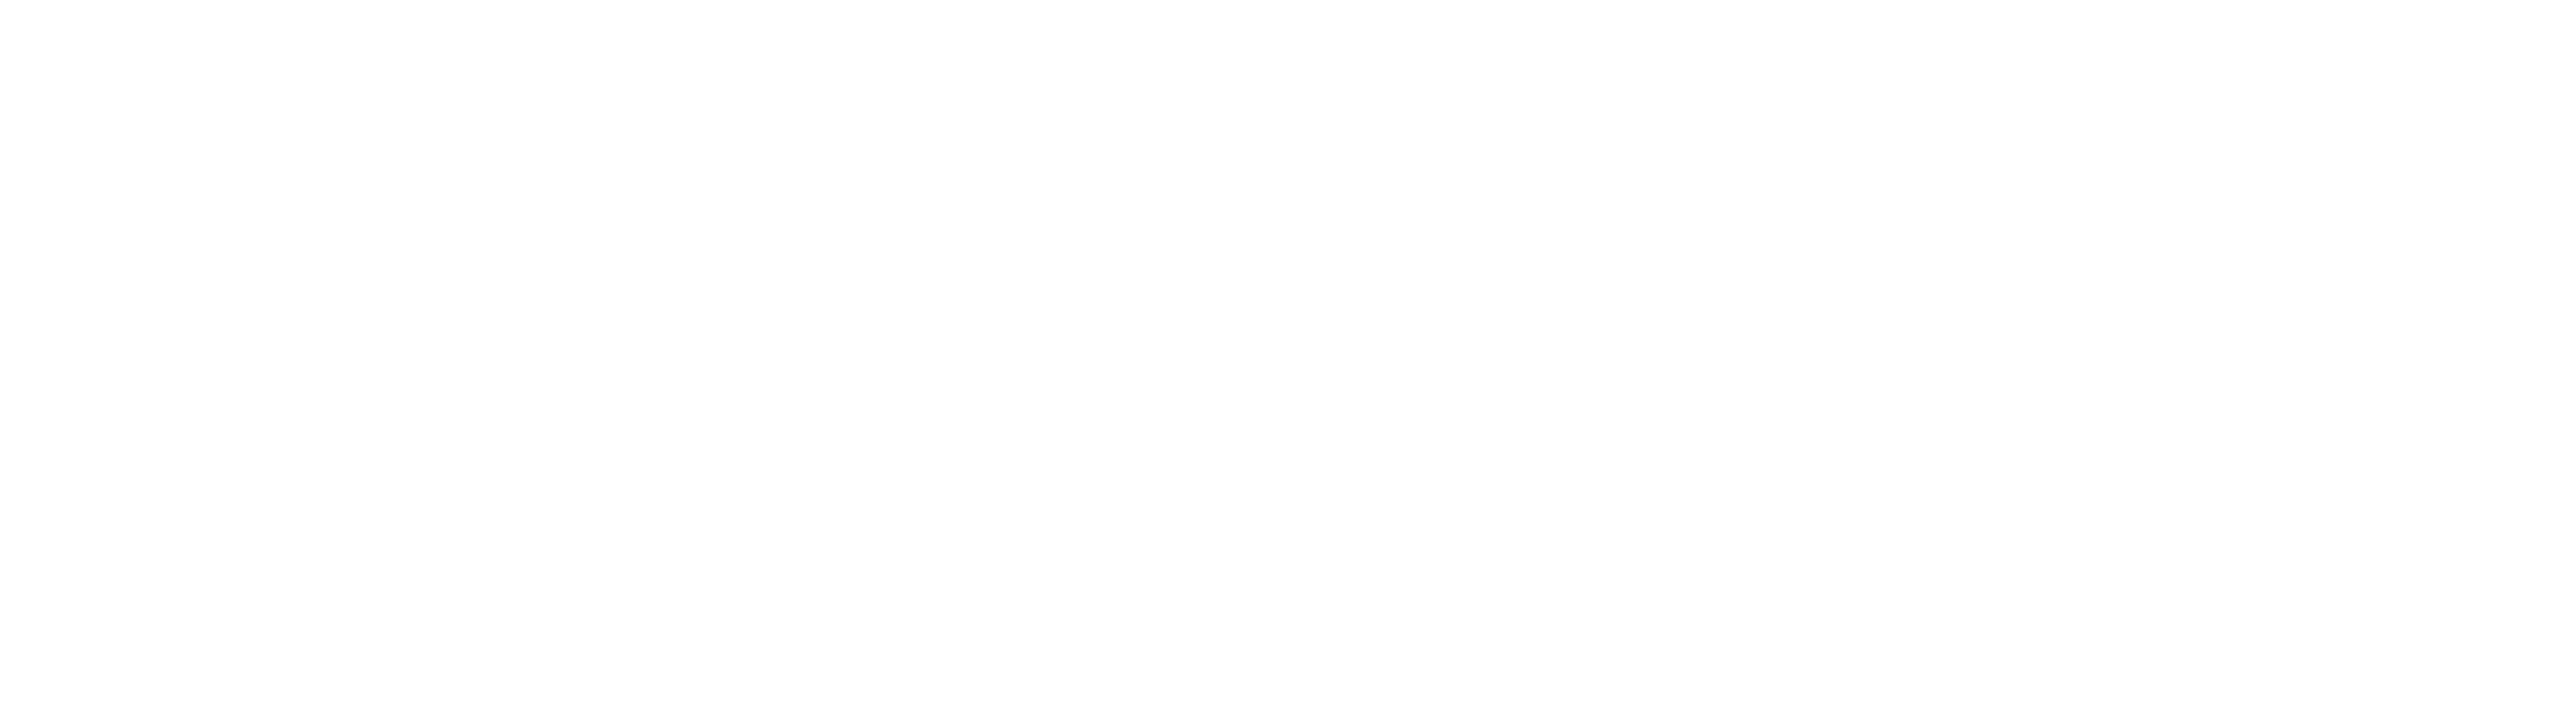 J J Churchill Ltd Logo